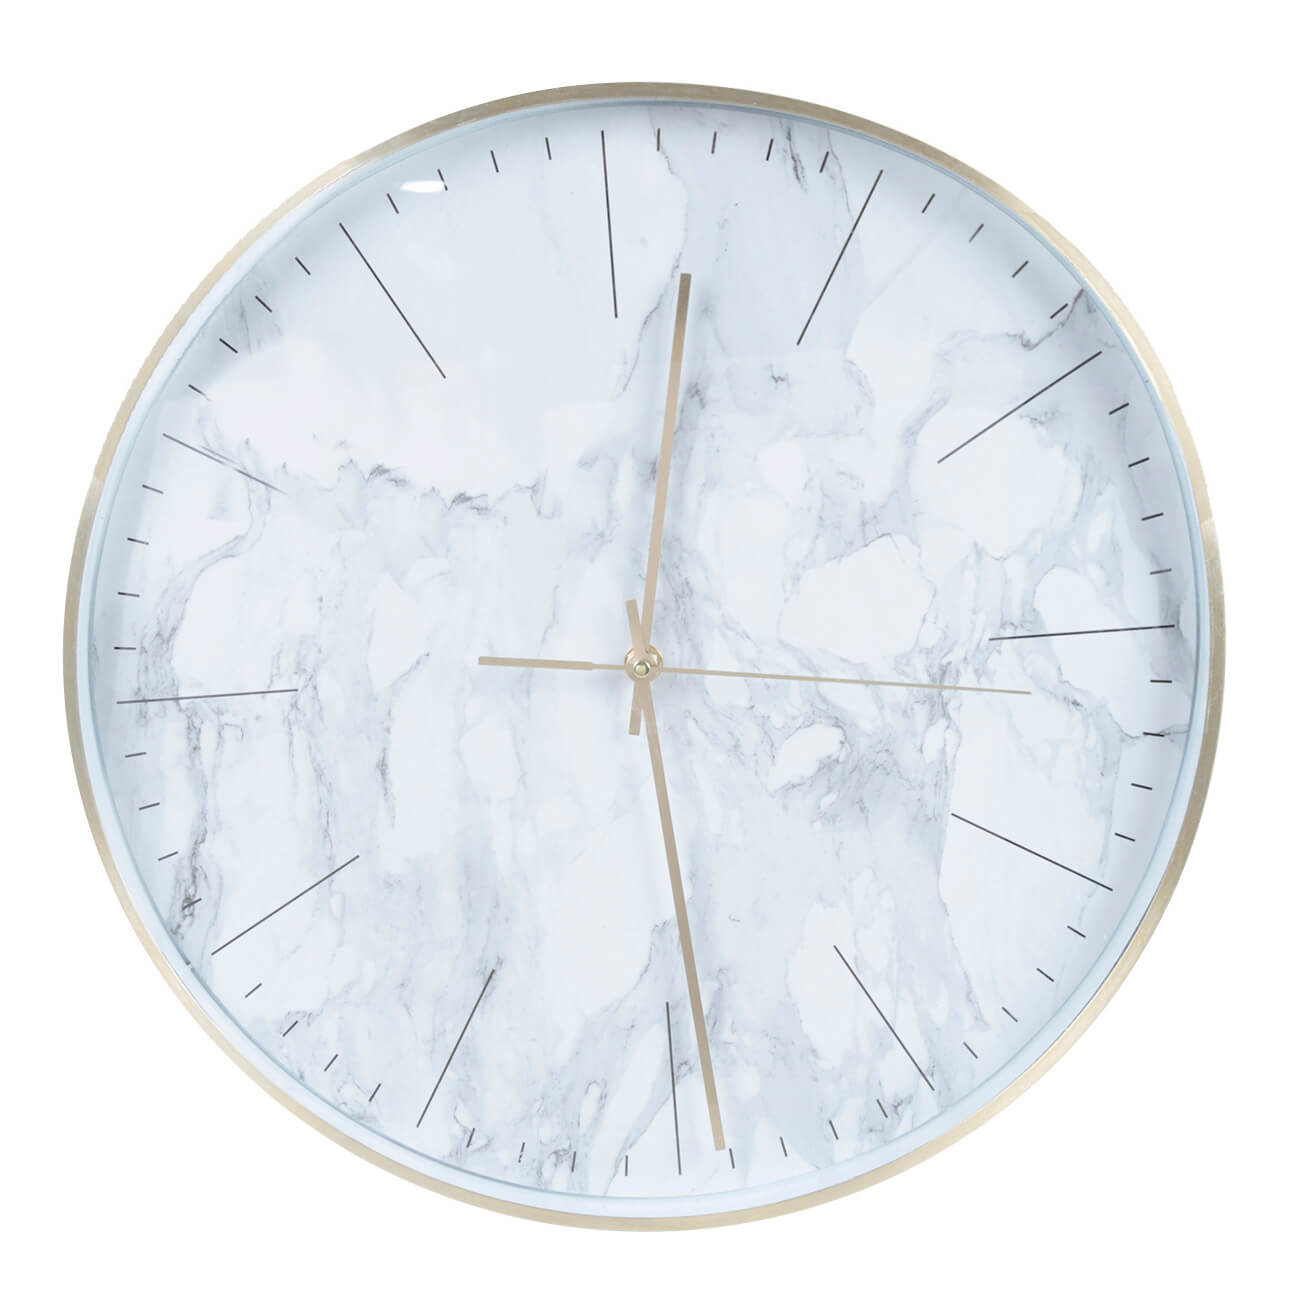 Часы настенные, 40 см, пластик/стекло, круглые, белые, Мрамор, Maniera часы настенные olaff круглые 32х4 5 см арт 152 33040